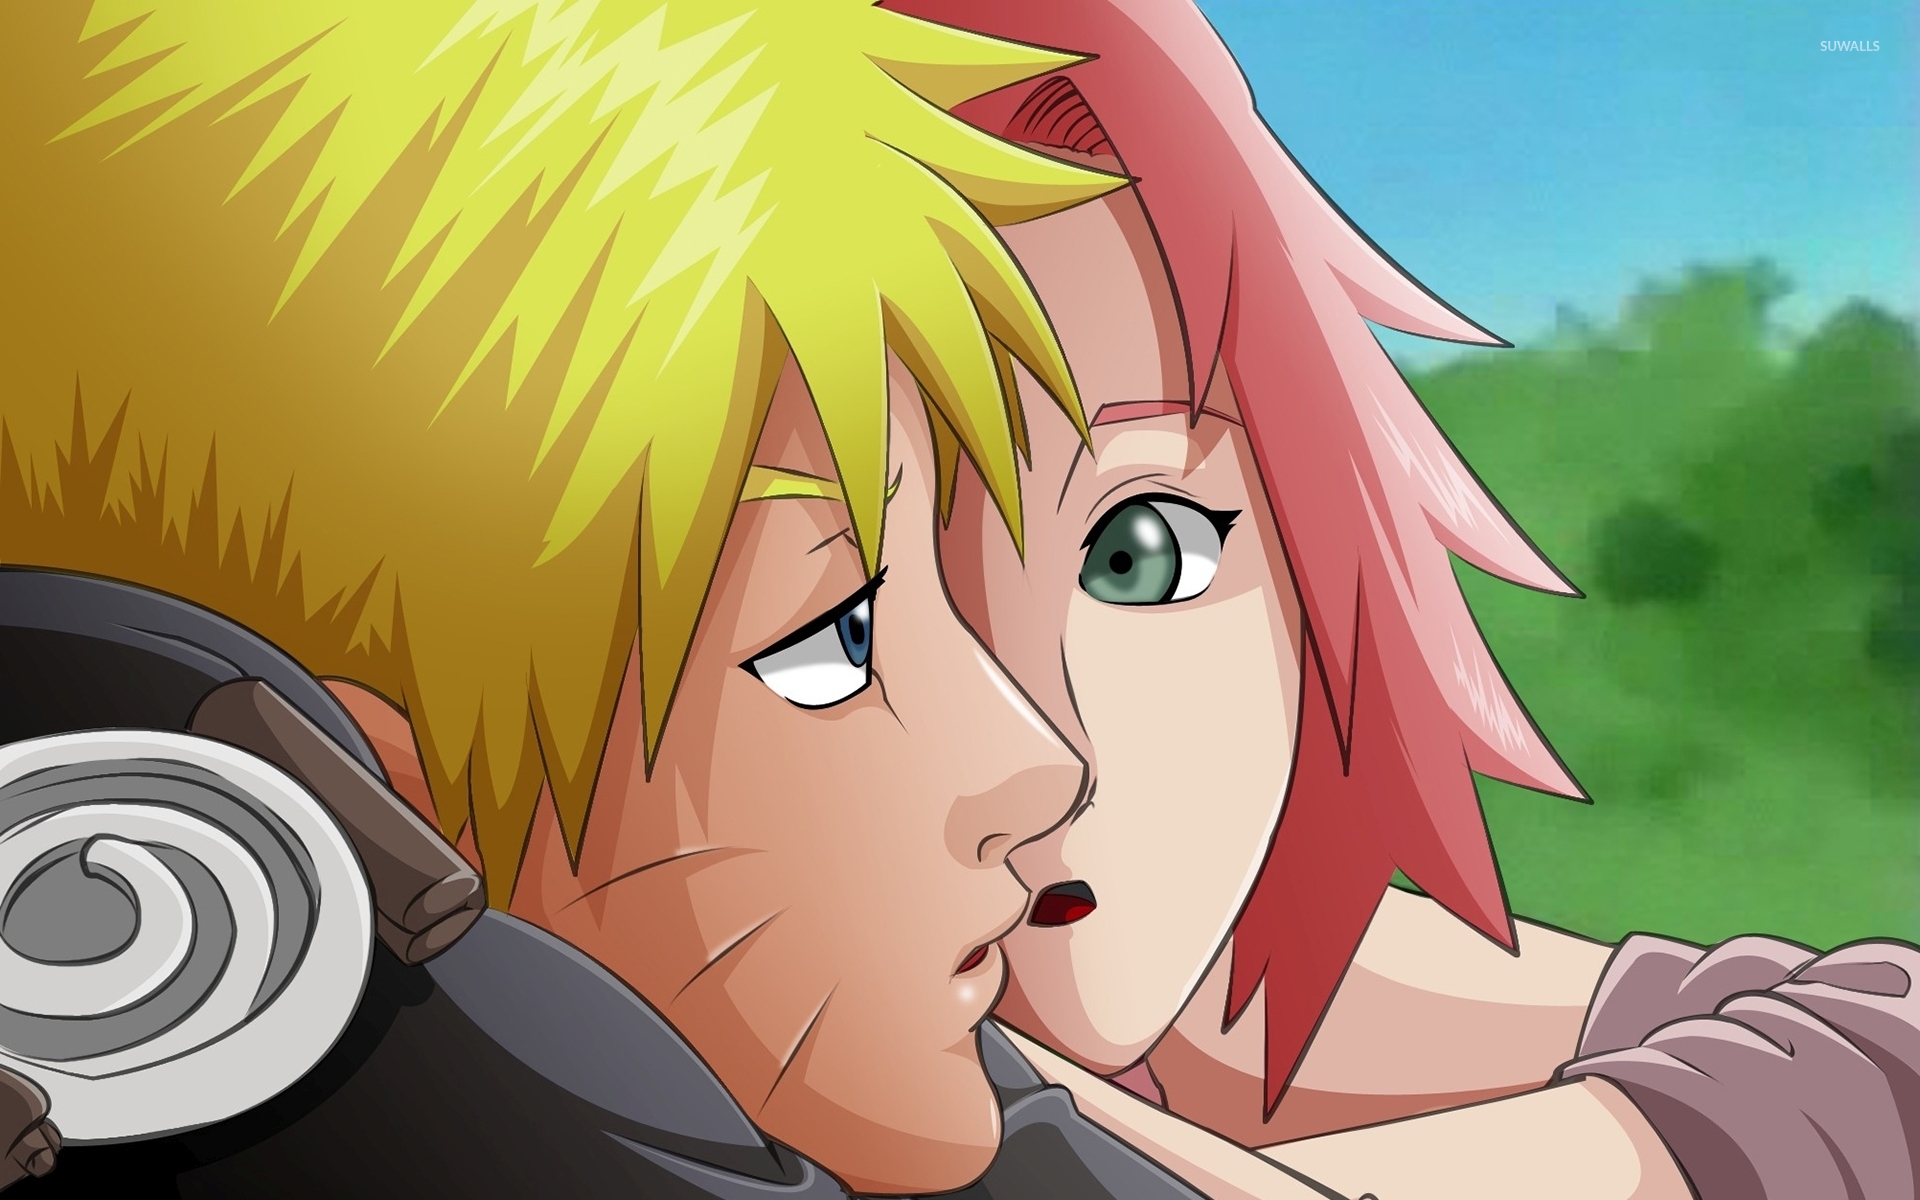 Naruto Uzumaki - Naruto wallpaper - Anime wallpapers - #38828